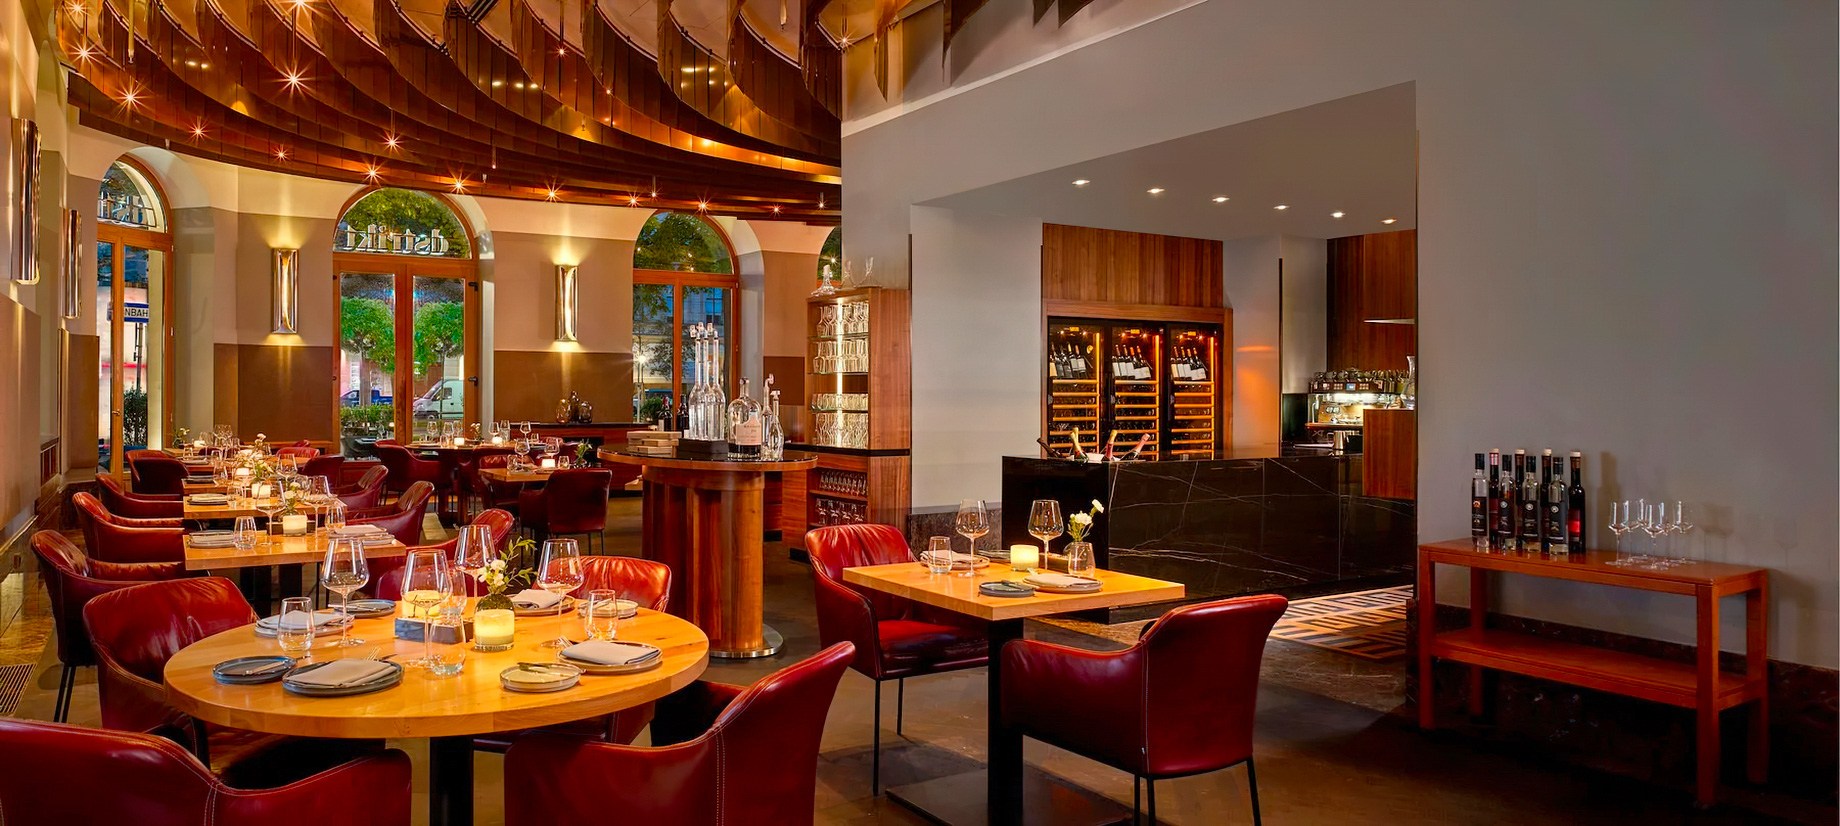 The Ritz-Carlton, Vienna Hotel – Vienna, Austria – Dstrikt Steakhouse Interior